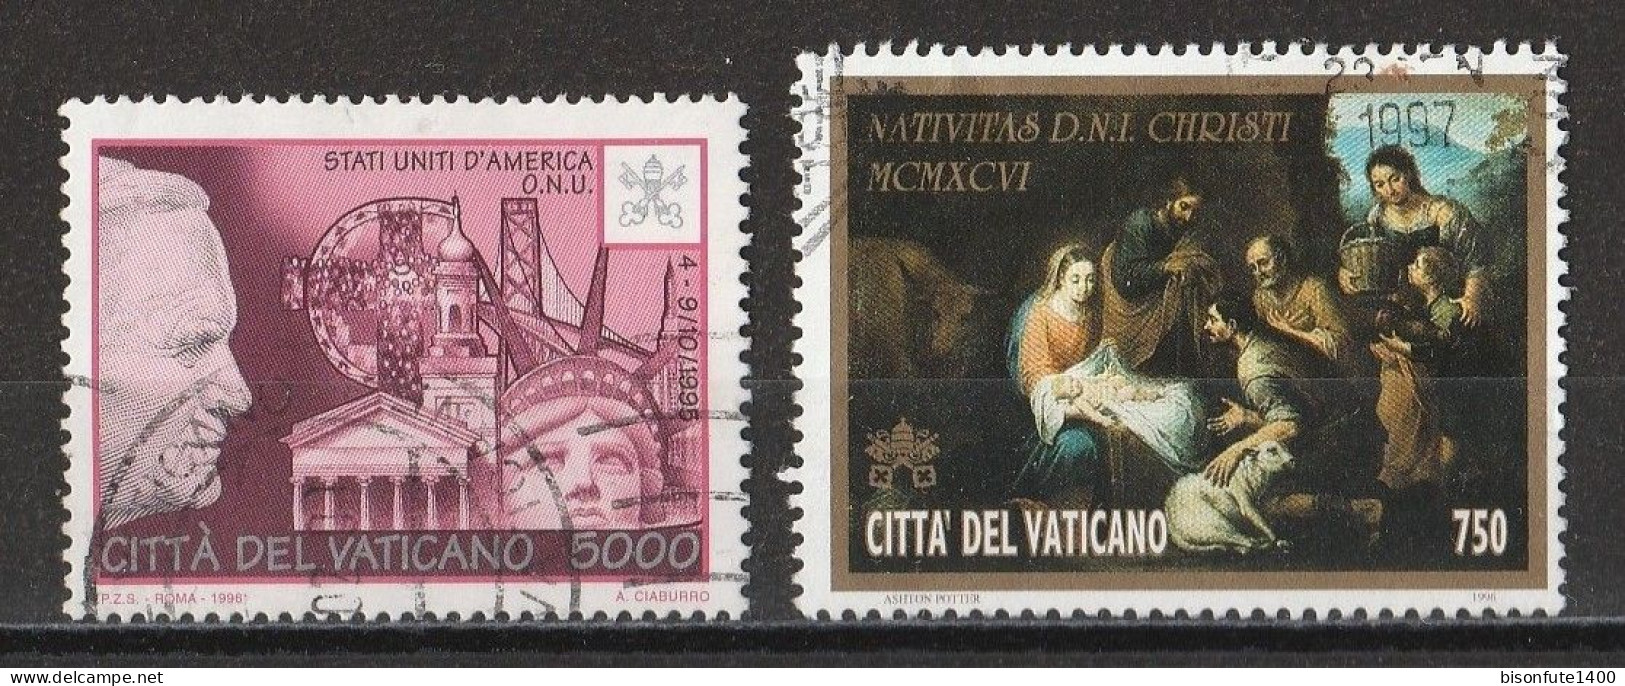 Vatican 1996 : Timbres Yvert & Tellier N° 1050 - 1051 - 1052 - 1053 - 1054 - 1057 Et 1058 Oblitérés - Oblitérés